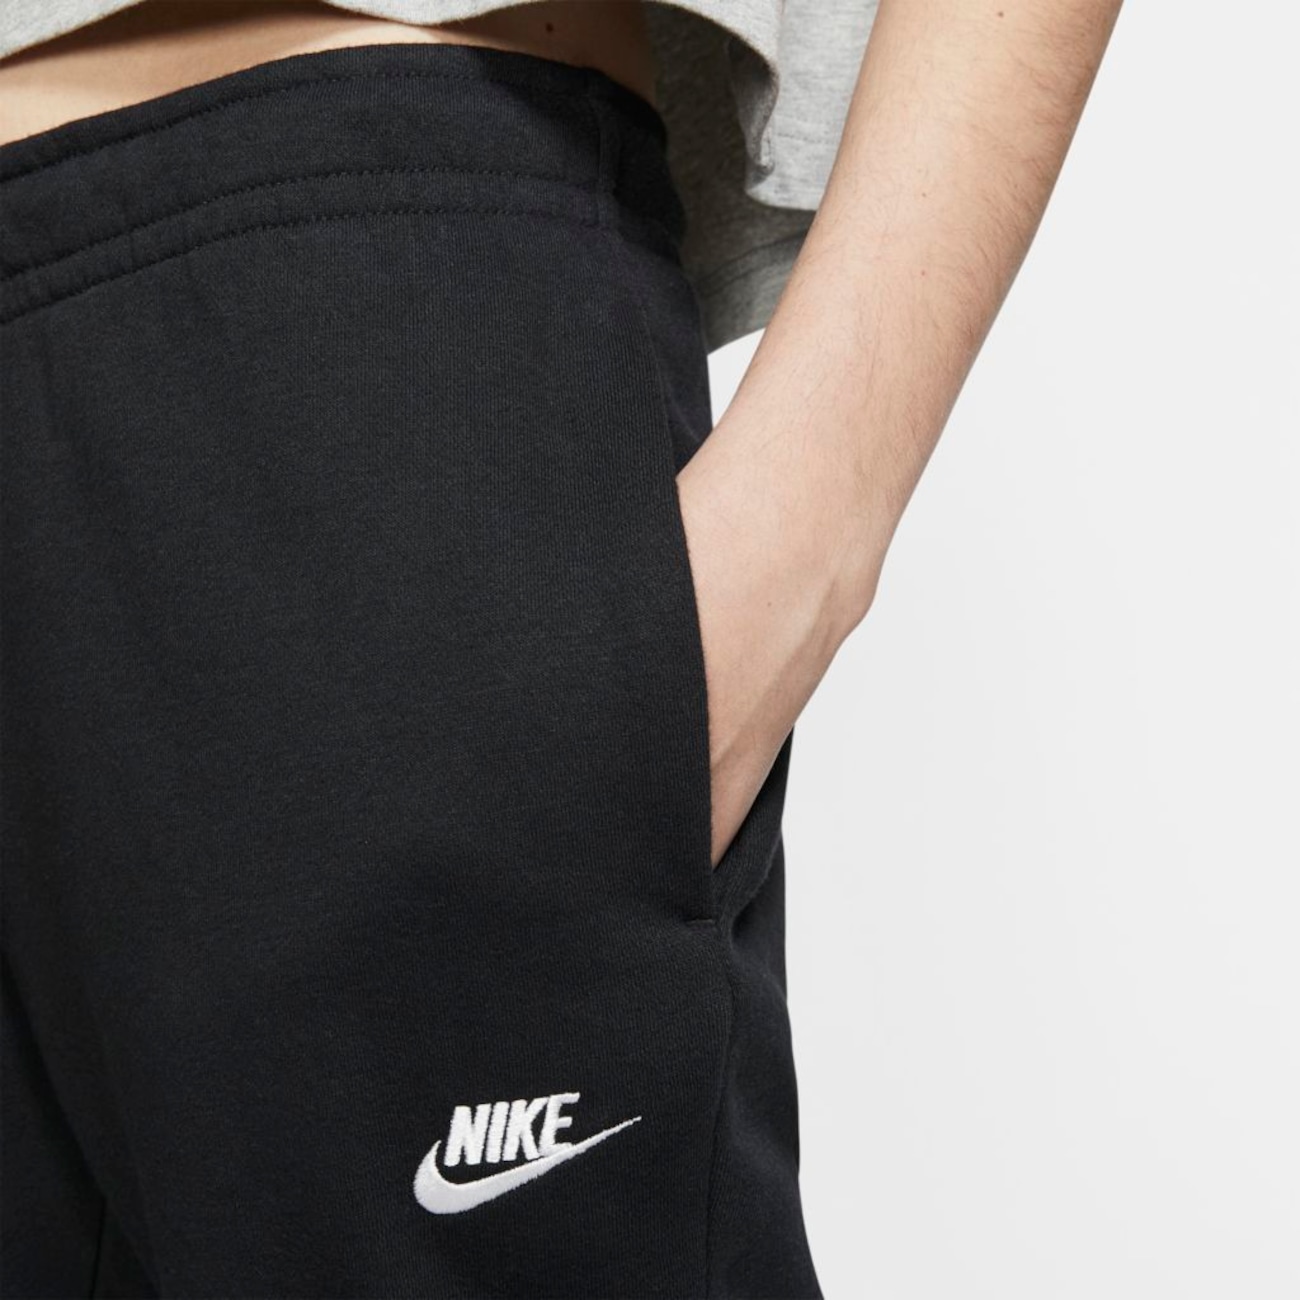 Calça Nike Sportswear Essential Feminina - Foto 3